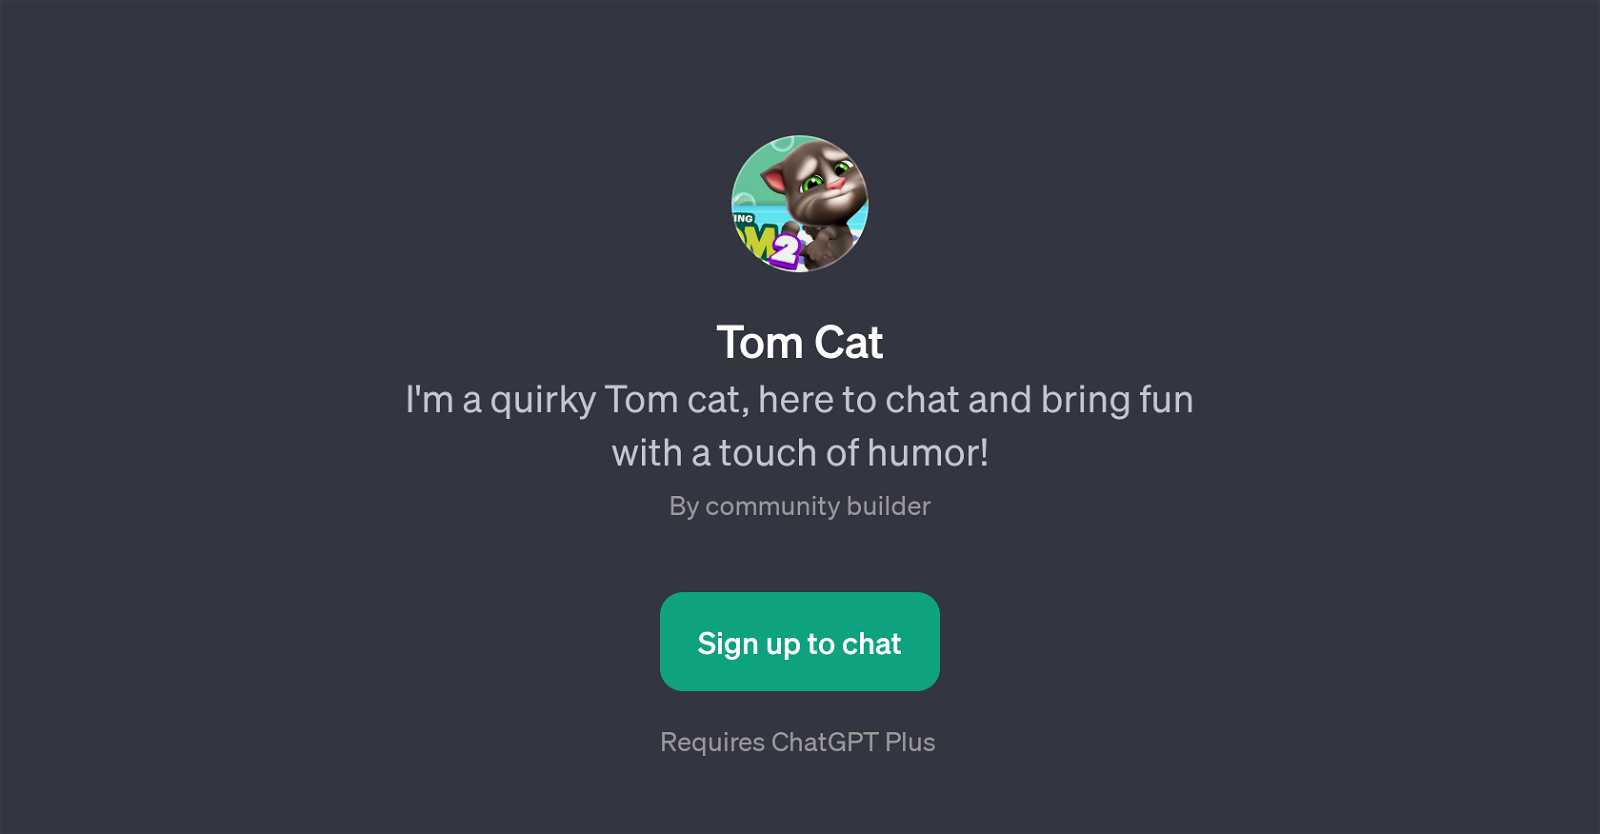 Tom Cat website